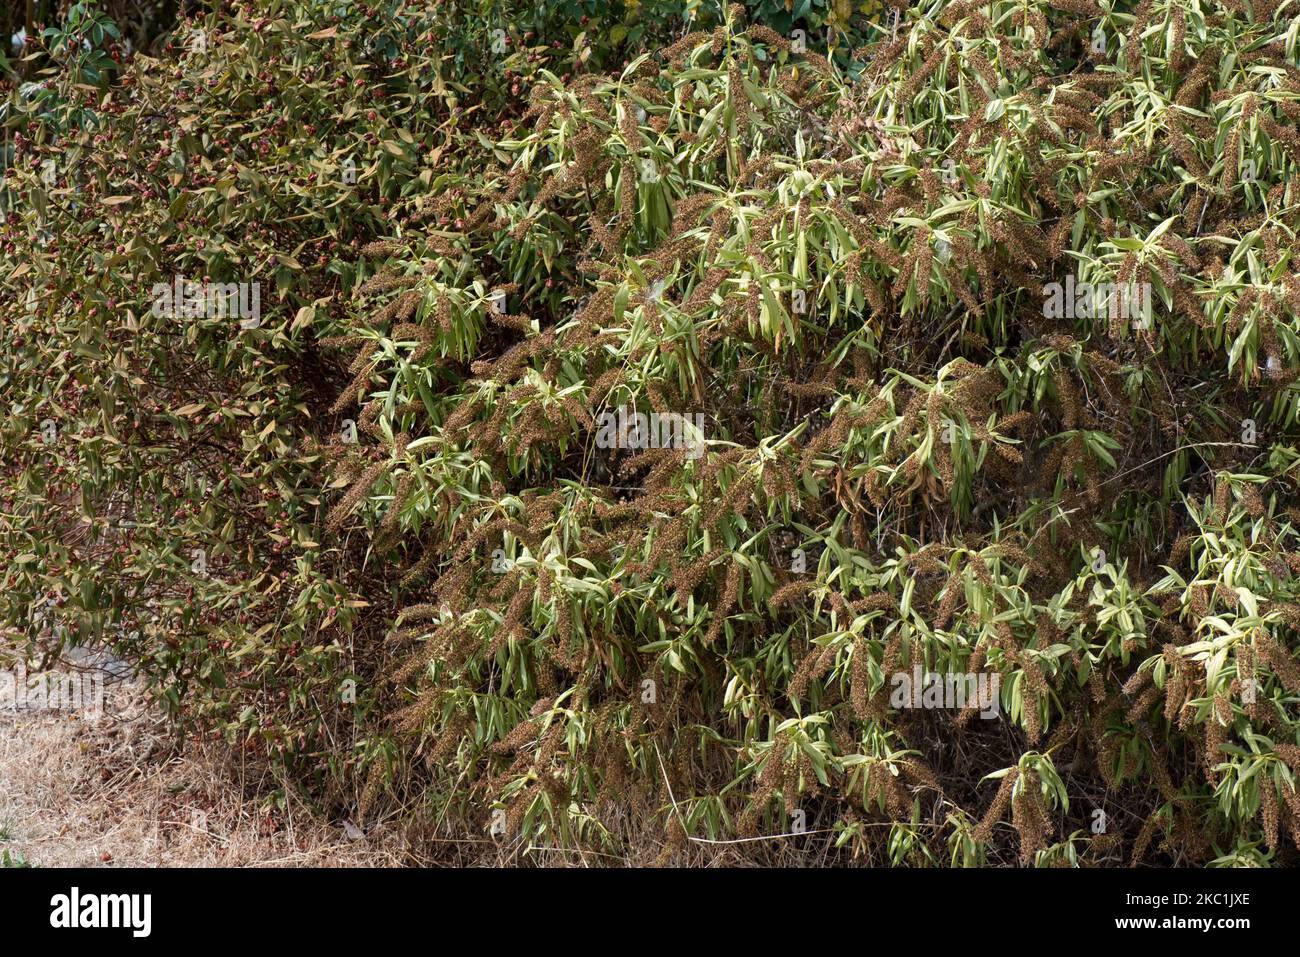 Arbustes fleuris, Hebe spp. Et Hypericum spp. Dont les fleurs et les feuilles sont gravement endommagées par les conditions chaudes de sécheresse estivale, Berkshire, août 2022 Banque D'Images